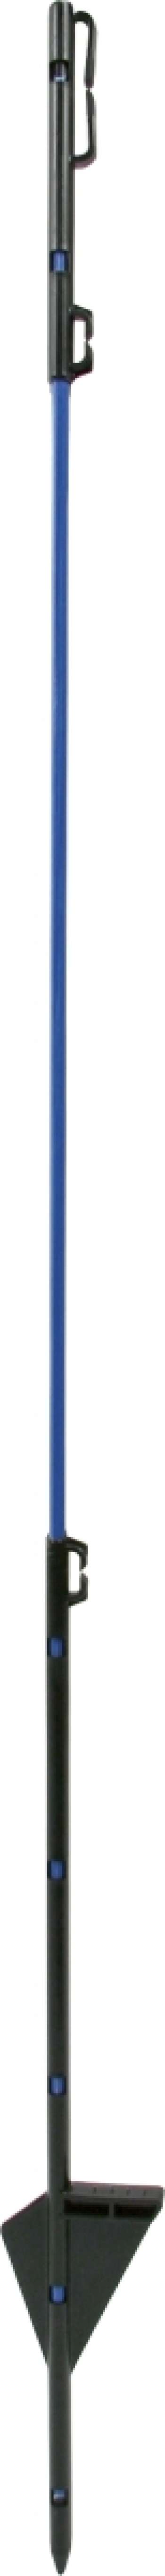 Glasfiberstolpe till vildsvinsnät Blå, 90 cm